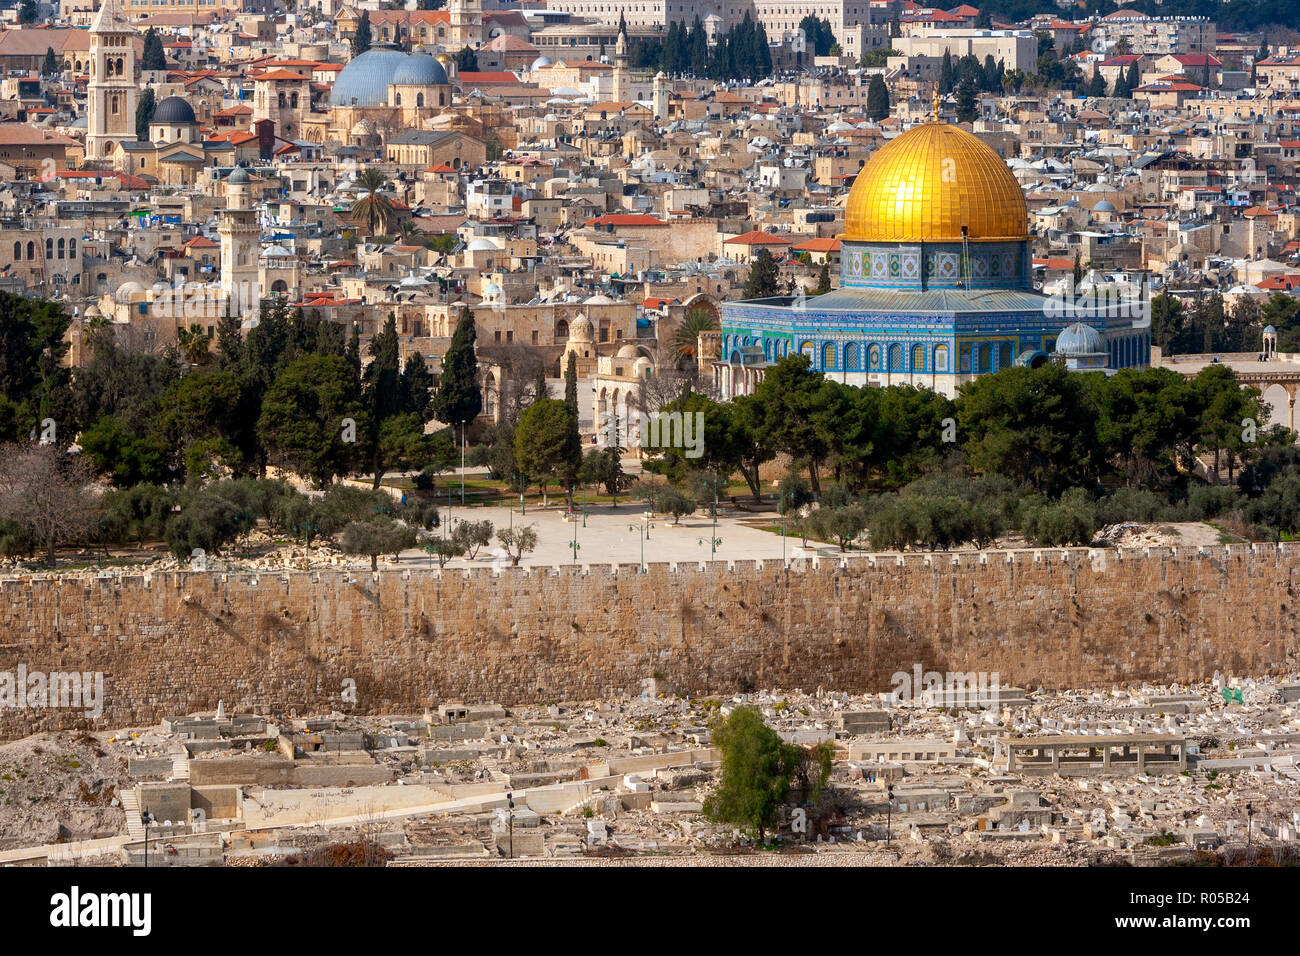 Vue sur Jérusalem et le Mont du Temple avec le dôme du Rocher et le Mont des Oliviers. Palestine - Israël Banque D'Images